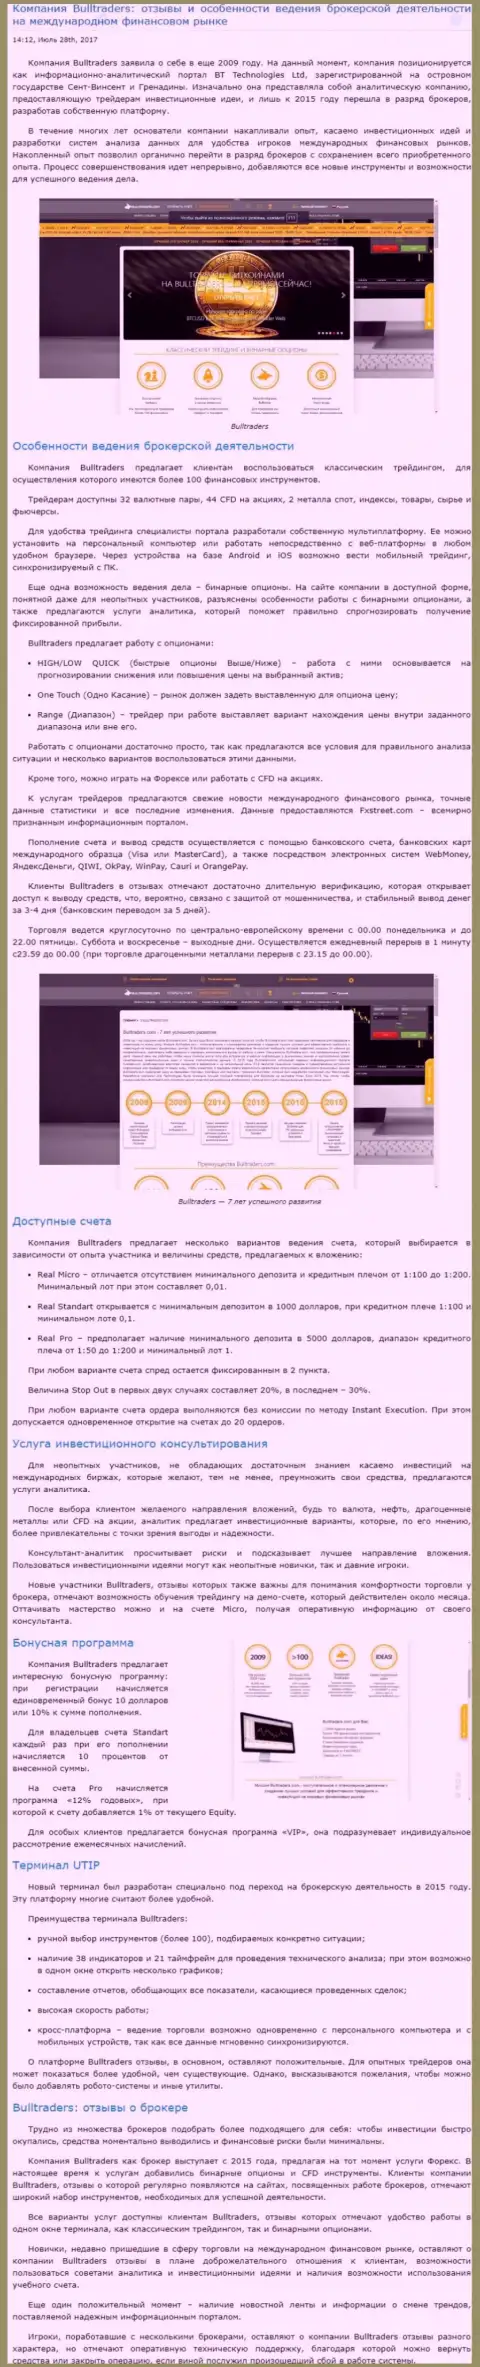 Рассмотрение методов ведения торгов форекс дилинговой организации БуллТрейдерс на международном валютном рынке Форекс на web-портале besuccess ru